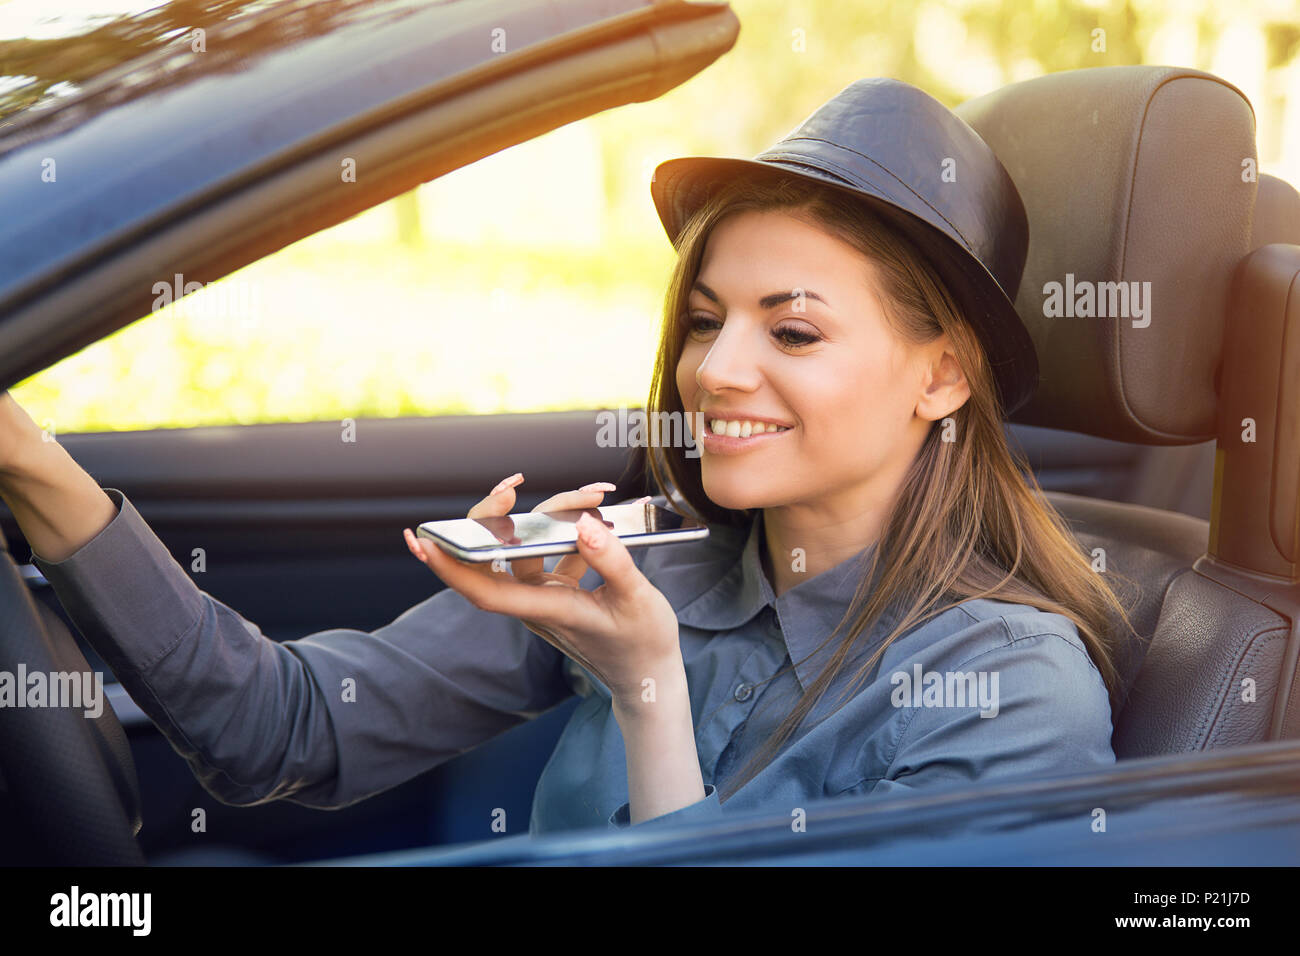 Gerne Frau sitzt im Inneren Cabrio mit einem smart phone Funktion Spracherkennung auf der Linie im Freien auf einem beleuchteten Park Hintergrund Stockfoto